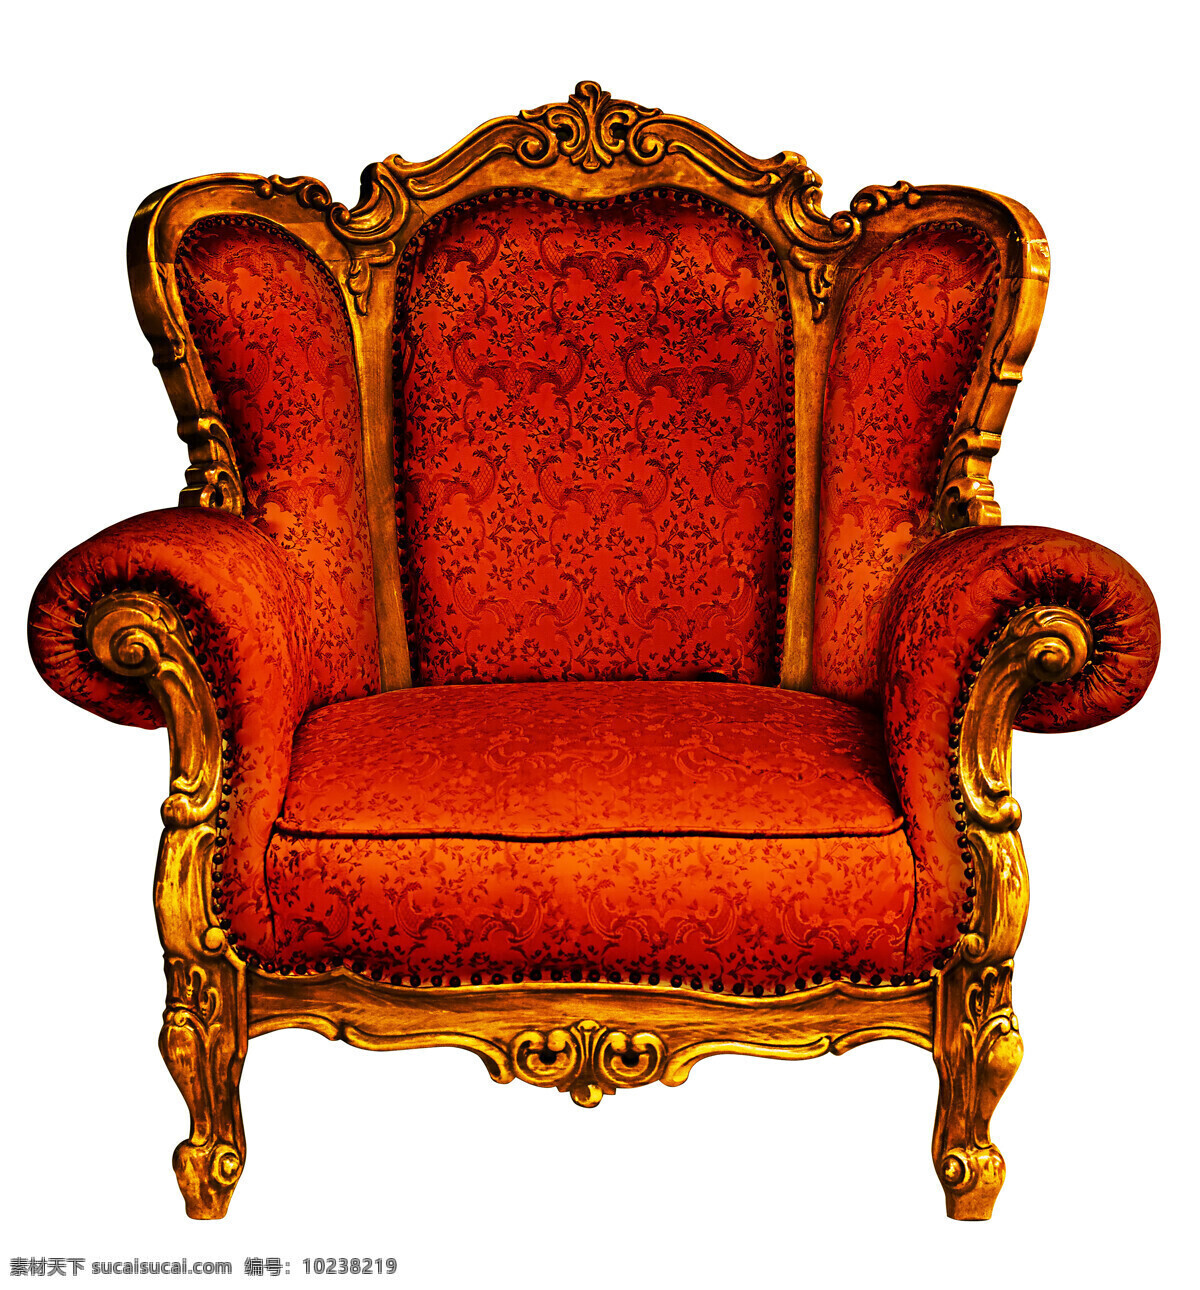 经典 尊贵 皮质 沙发 尊豪 豪华 富贵 温暖 皮质沙发 欧式风格皮椅 室内装饰 舒适的皮沙发 椅子 家具 室内设计 环境家居